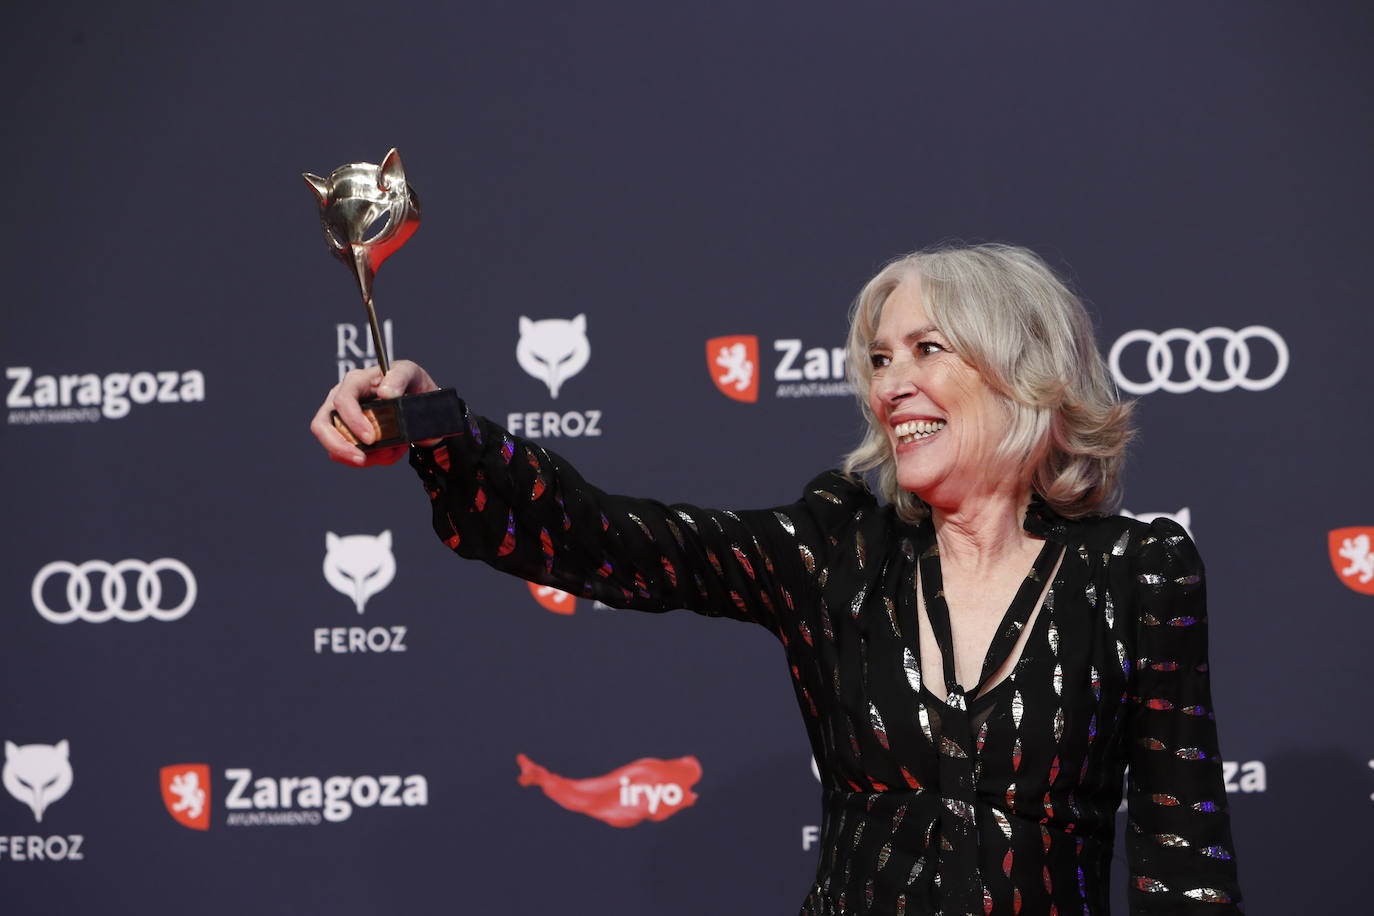 La gala de los Premios Feroz, en imágenes